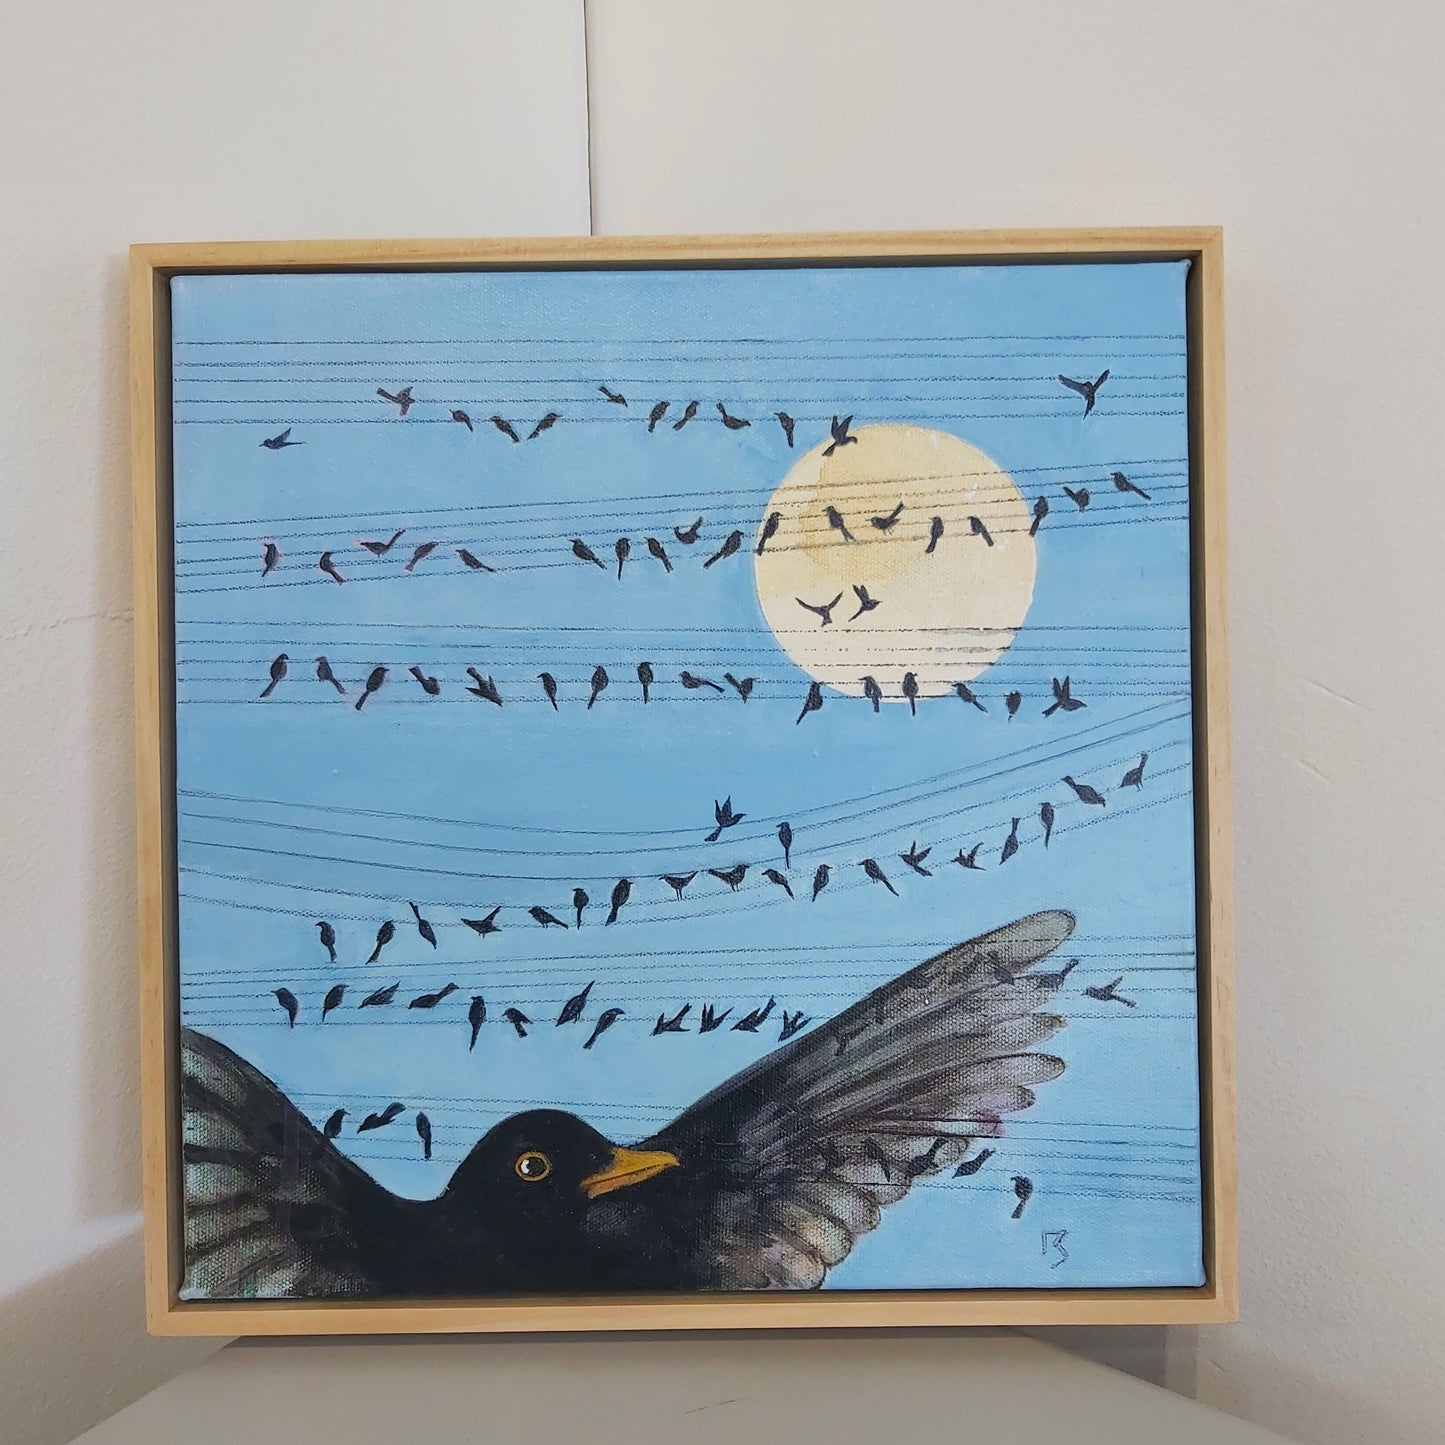 Songbird - (Christine Mcvie)